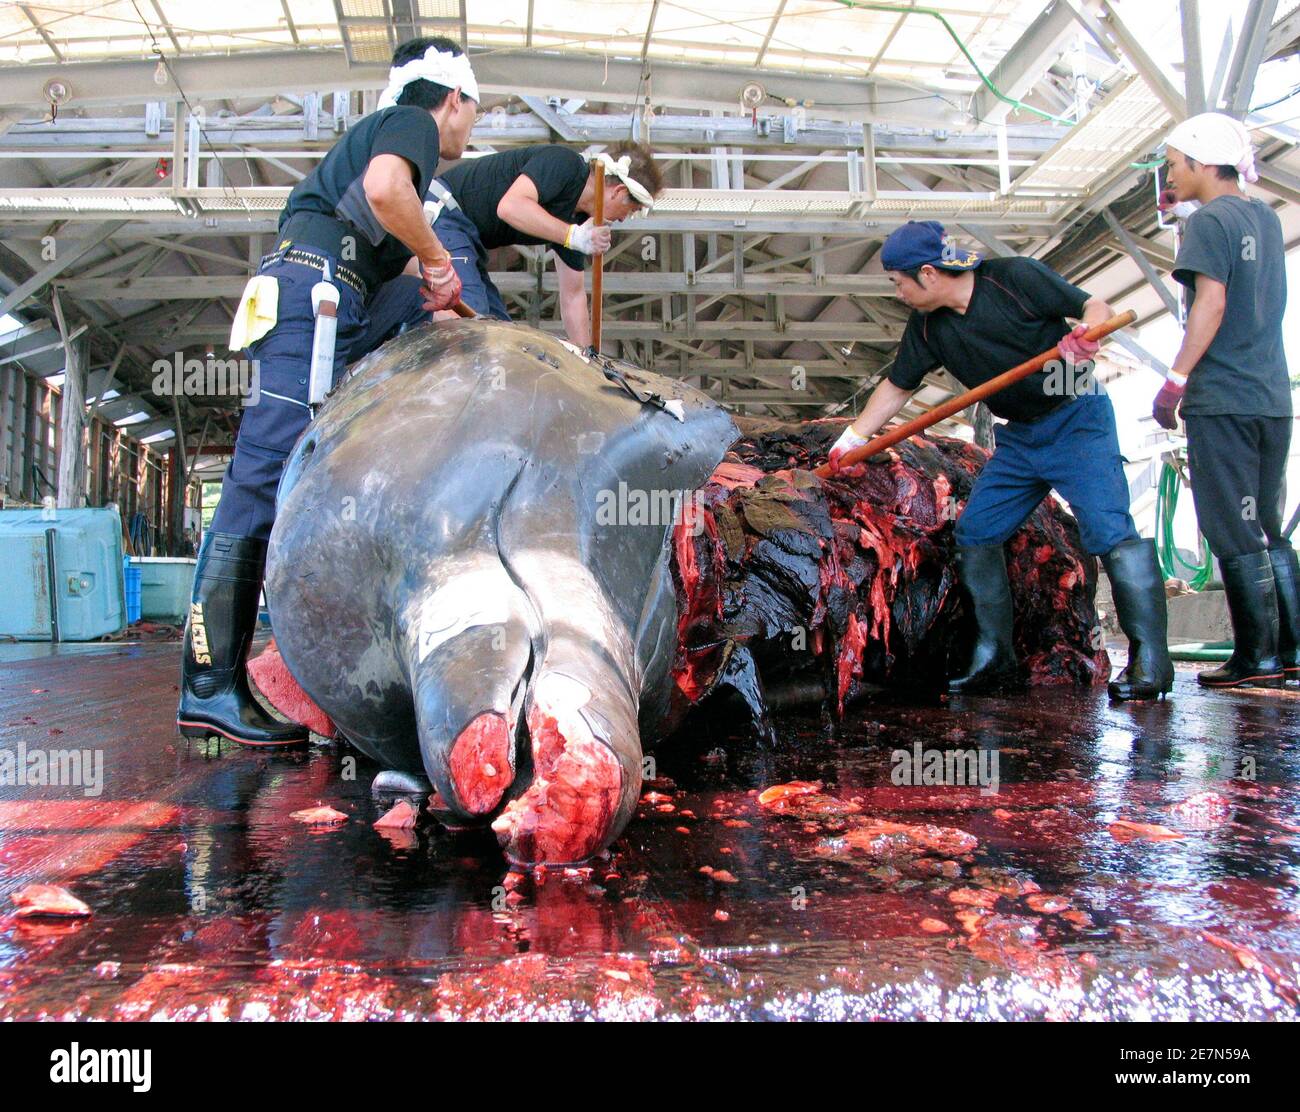 Lavoratori macellaio una balena di 11 tonnellate (10 tonnellate) Baird's Beaked Whale al porto di Wada nella prefettura di Chiba, Giappone 21 giugno 2007. Il Giappone lo scorso mese ha minacciato di abbandonare la Commissione Internazionale delle balene (IWC) dopo che l'opposizione delle nazioni anti-balene alla riunione annuale del gruppo ha costretto il paese a scartare una proposta per consentire a quattro villaggi costieri di uccidere le balene minke. REUTERS/Olivier Fabre (GIAPPONE) Foto Stock